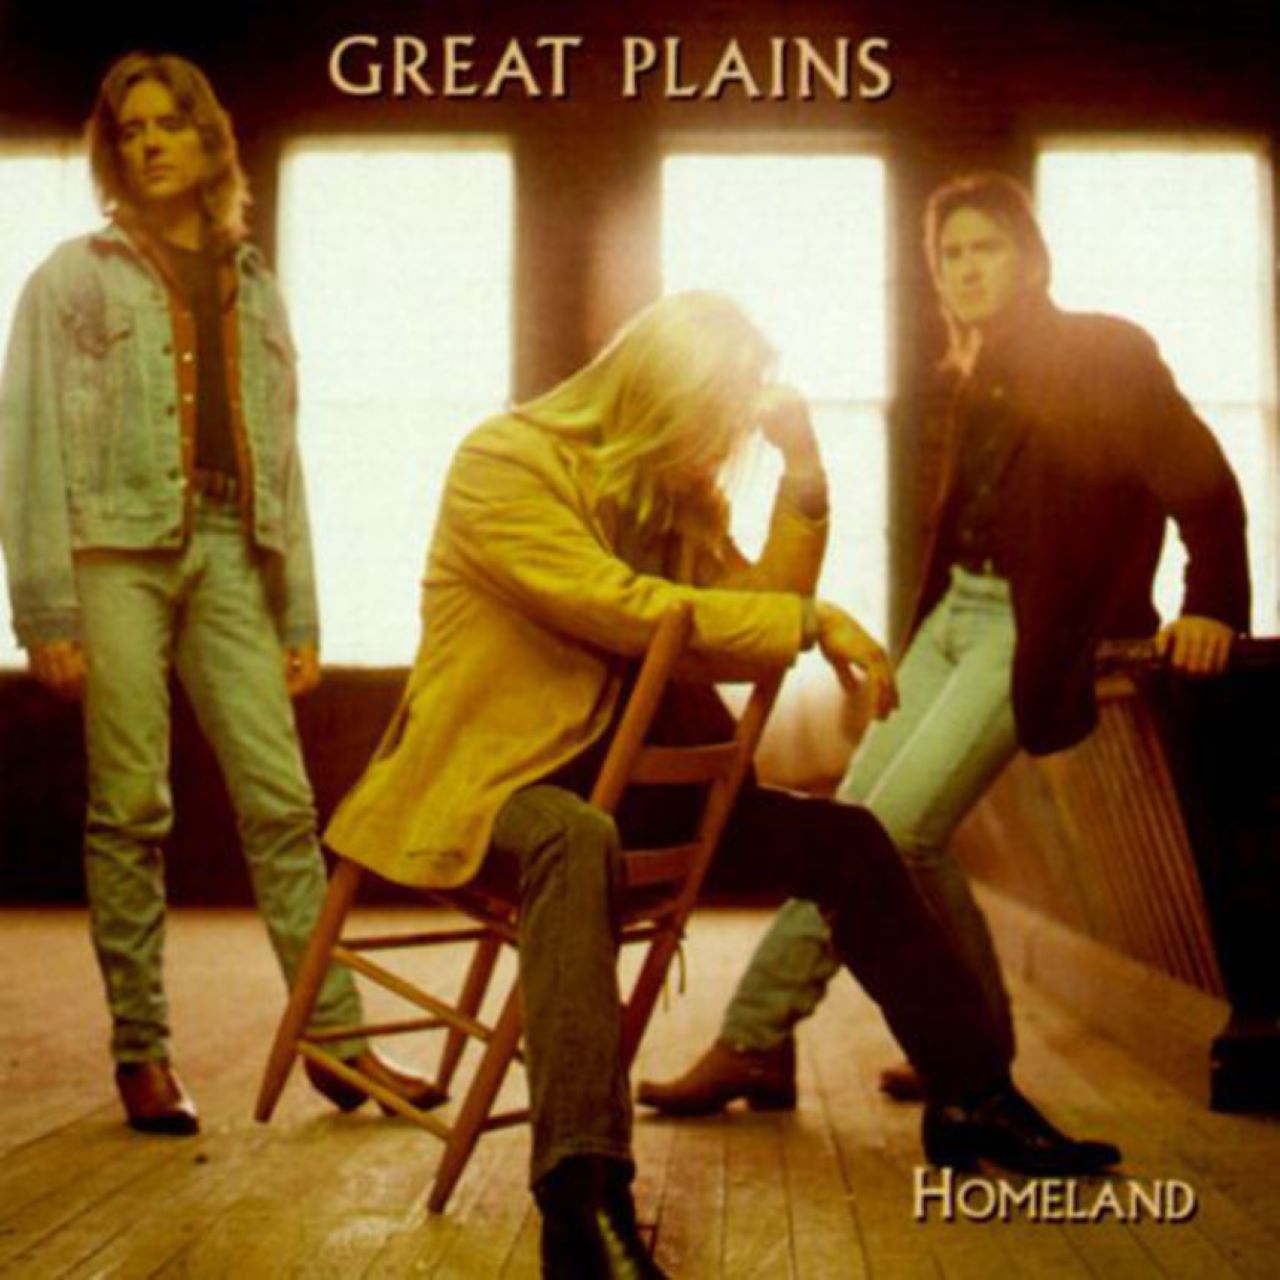 Great Plains - Homeland cover album